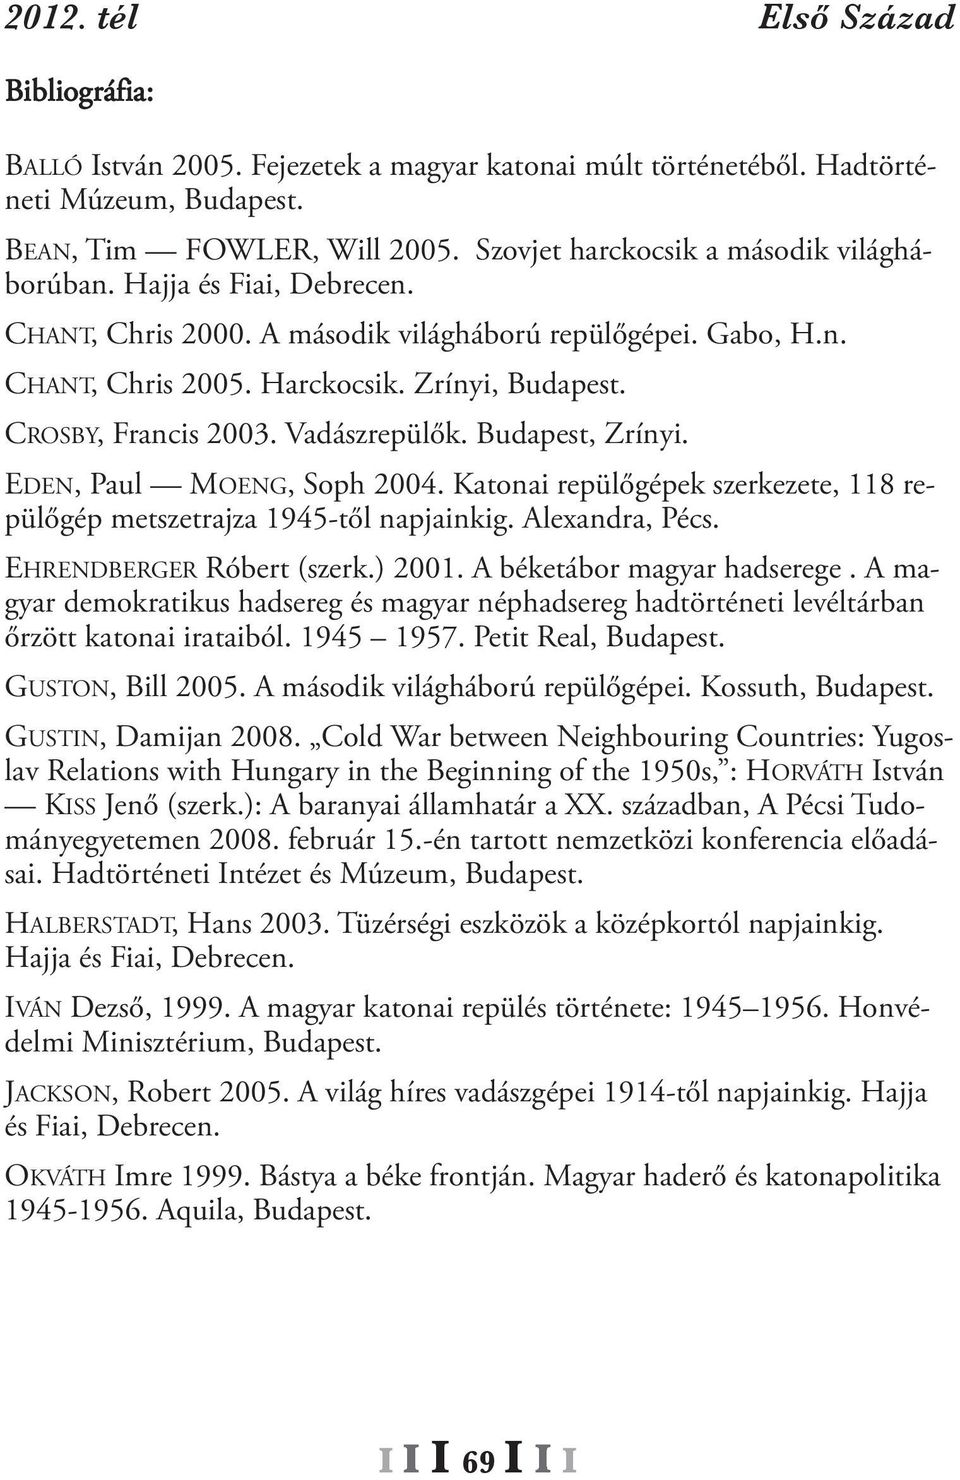 EDEN, Paul MOENg, Soph 2004. Katonai repülőgépek szerkezete, 118 repülőgép metszetrajza 1945-től napjainkig. Alexandra, Pécs. EHrENDBErgEr róbert (szerk.) 2001. A béketábor magyar hadserege.